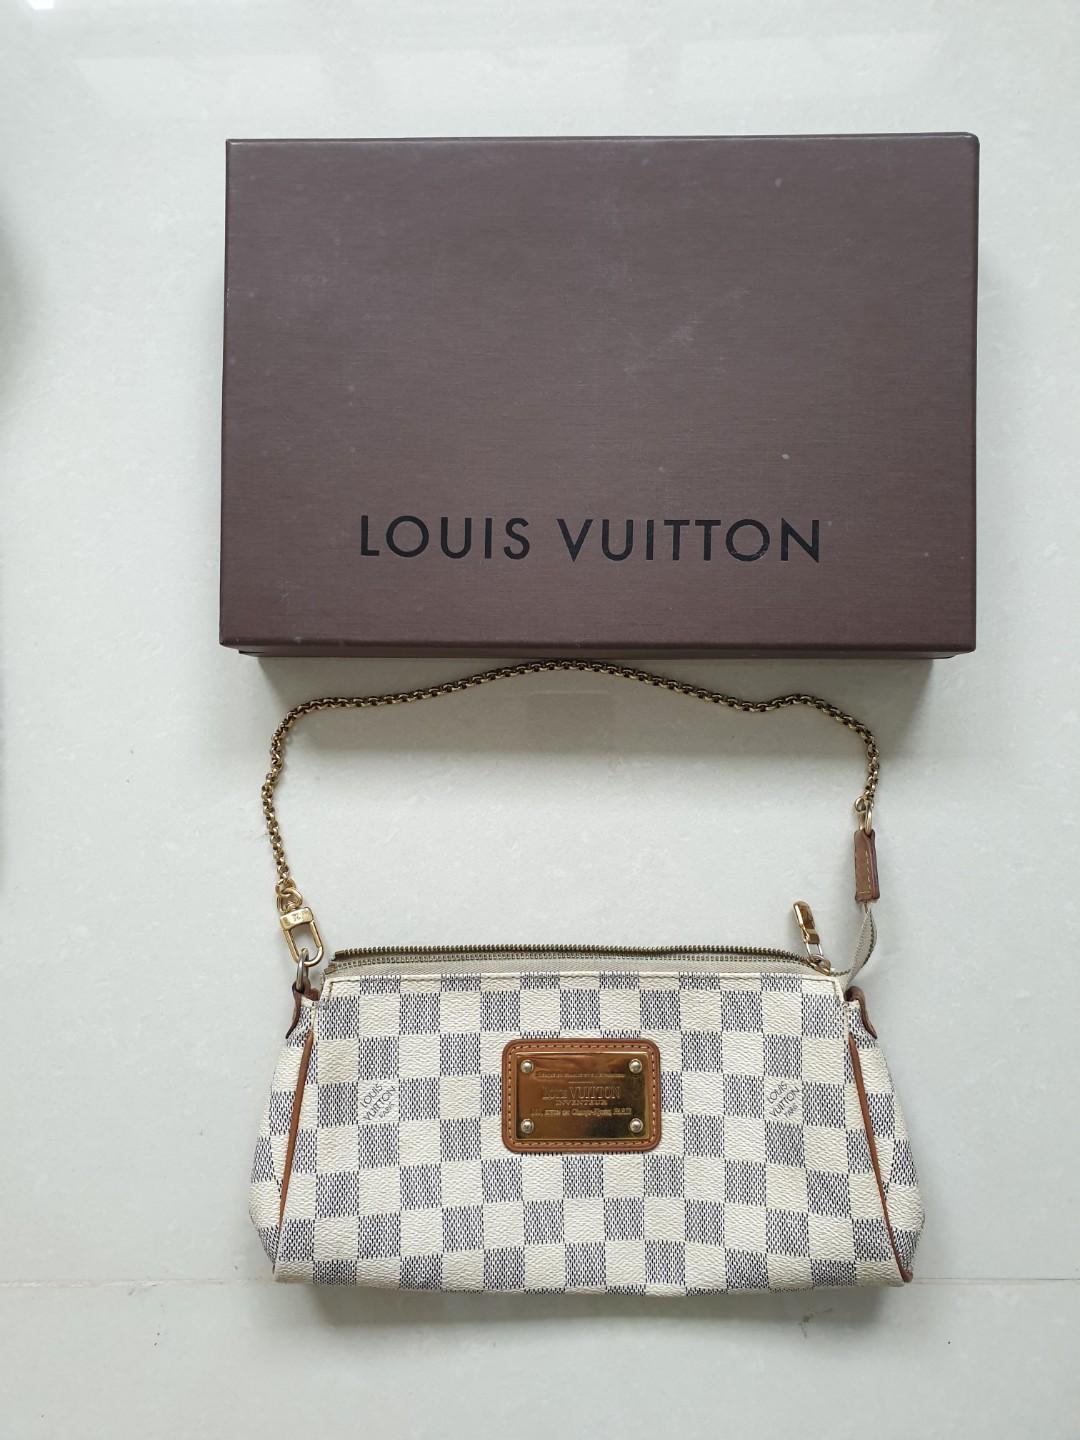 LOUIS VUITTON Damier Azur Eva Clutch Bag with Shoulder Strap 2009